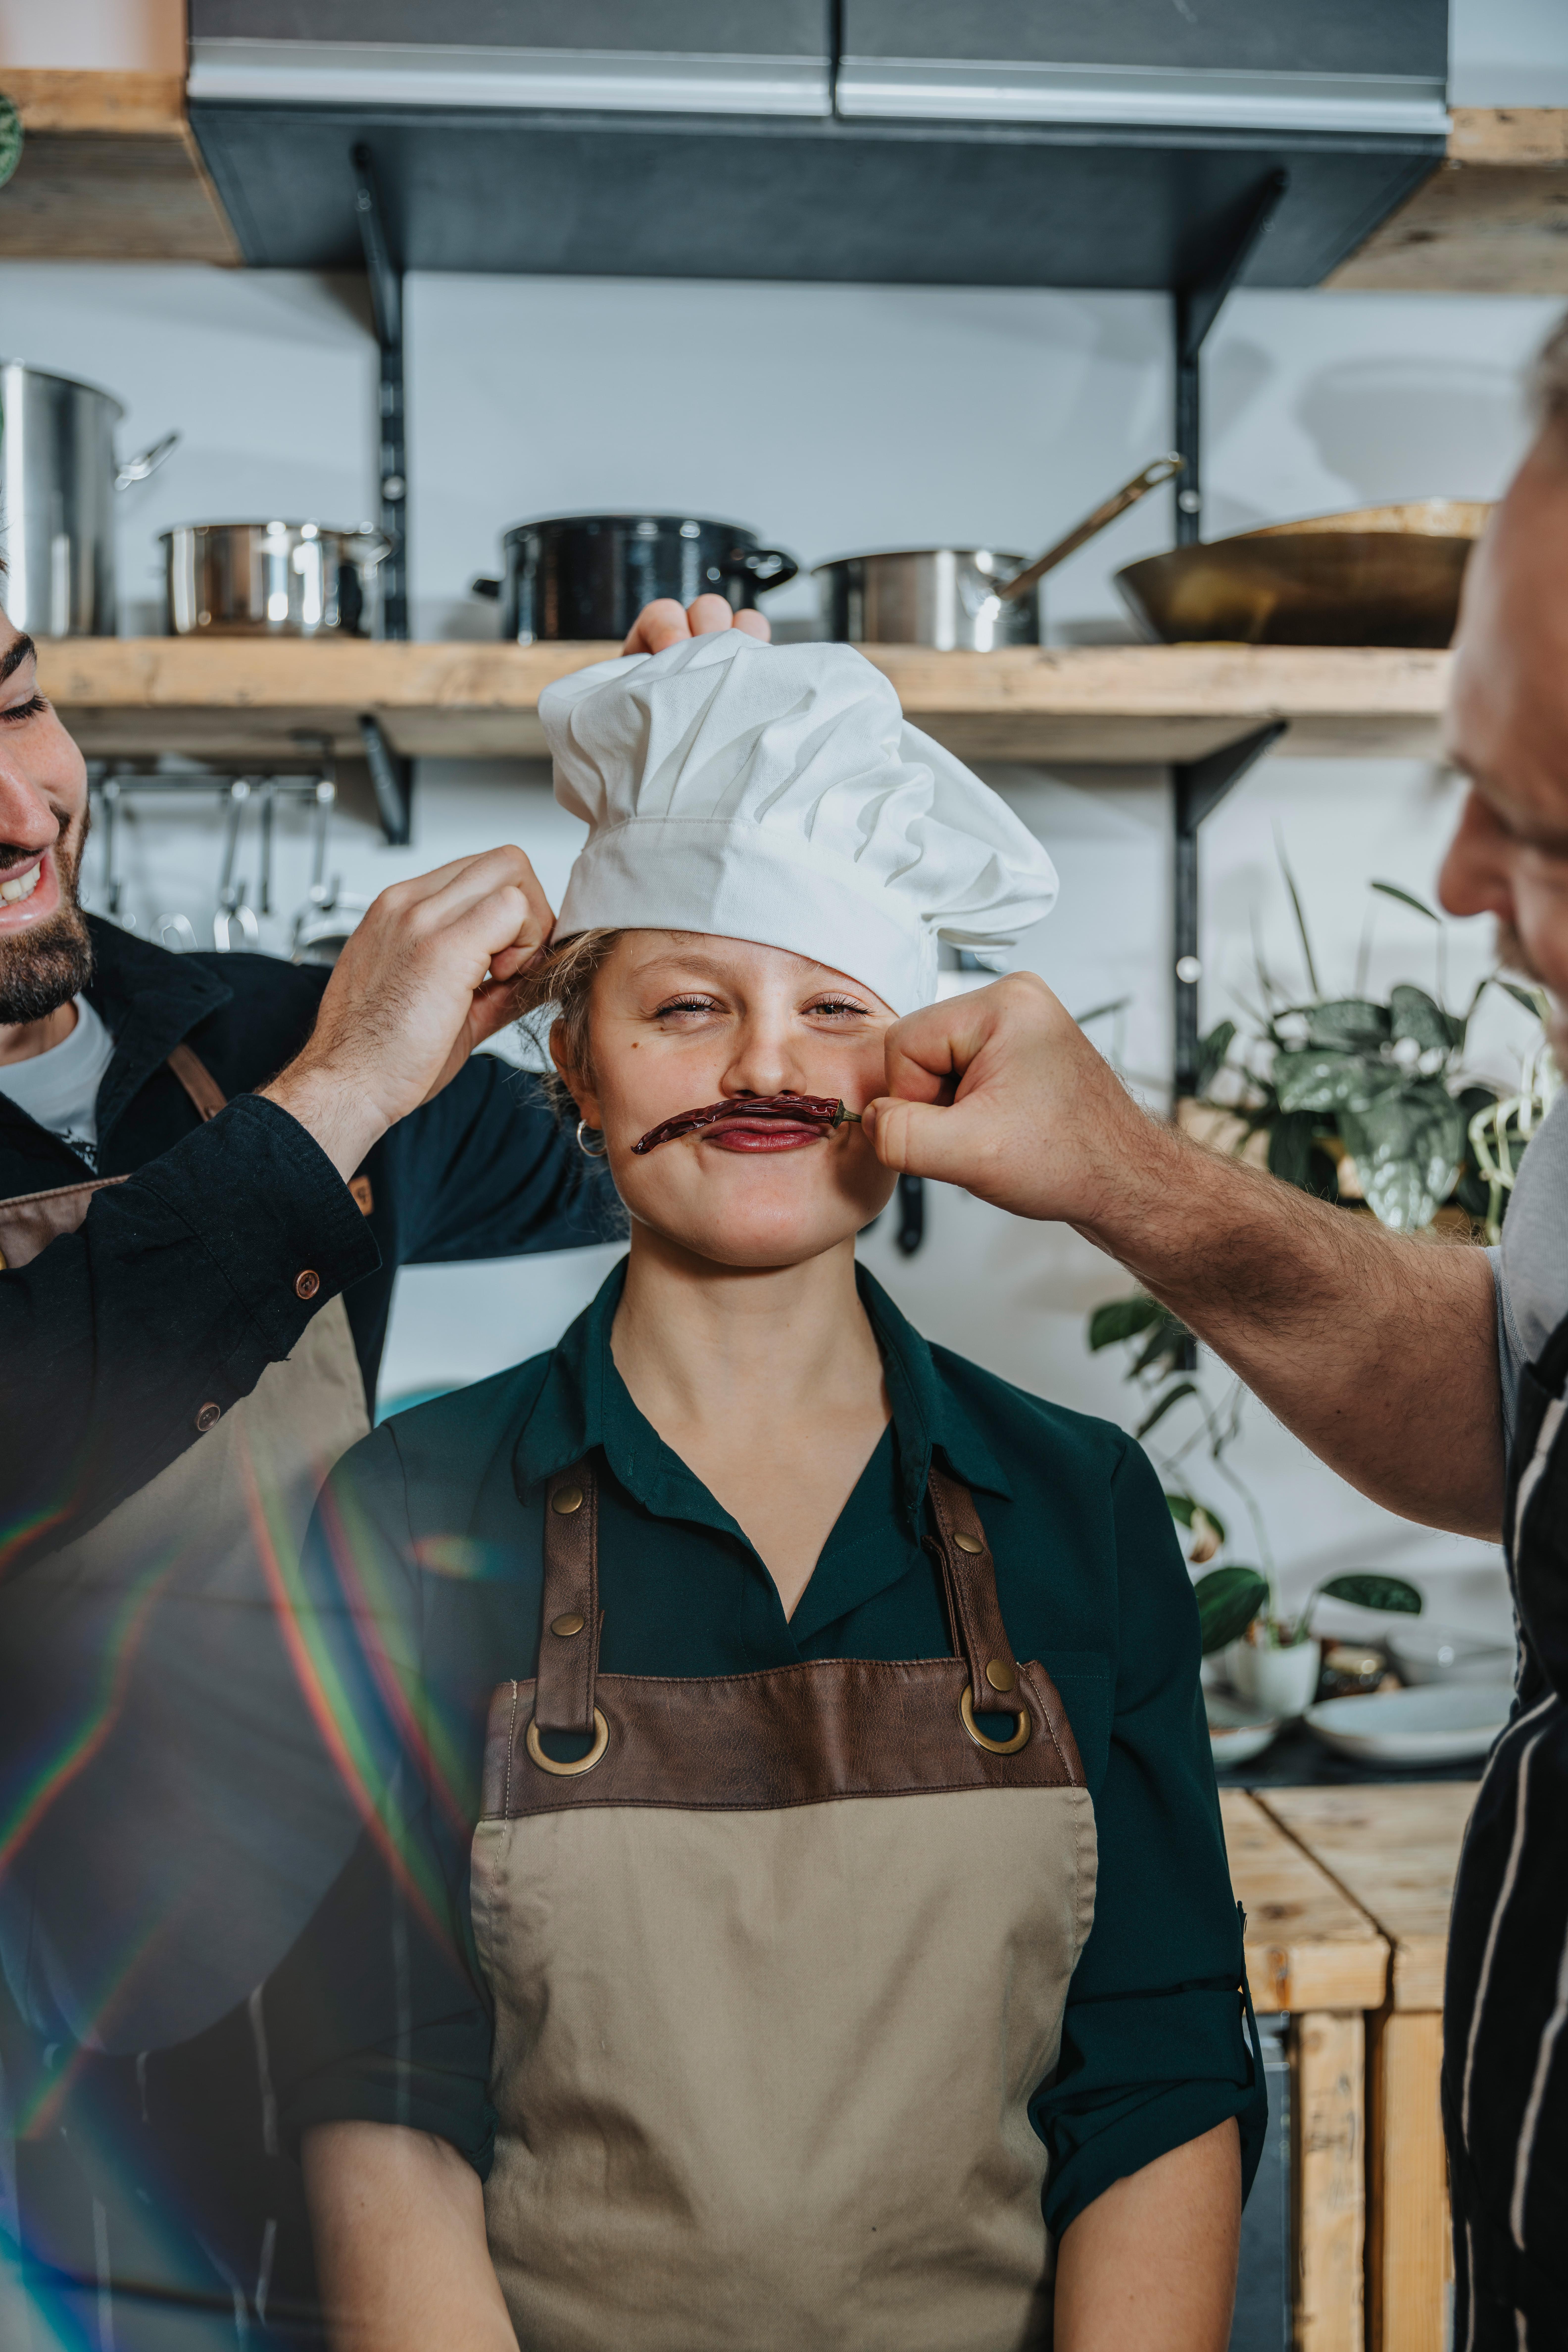 Chefs joking in kitchen, Koeln, NRW, Germany